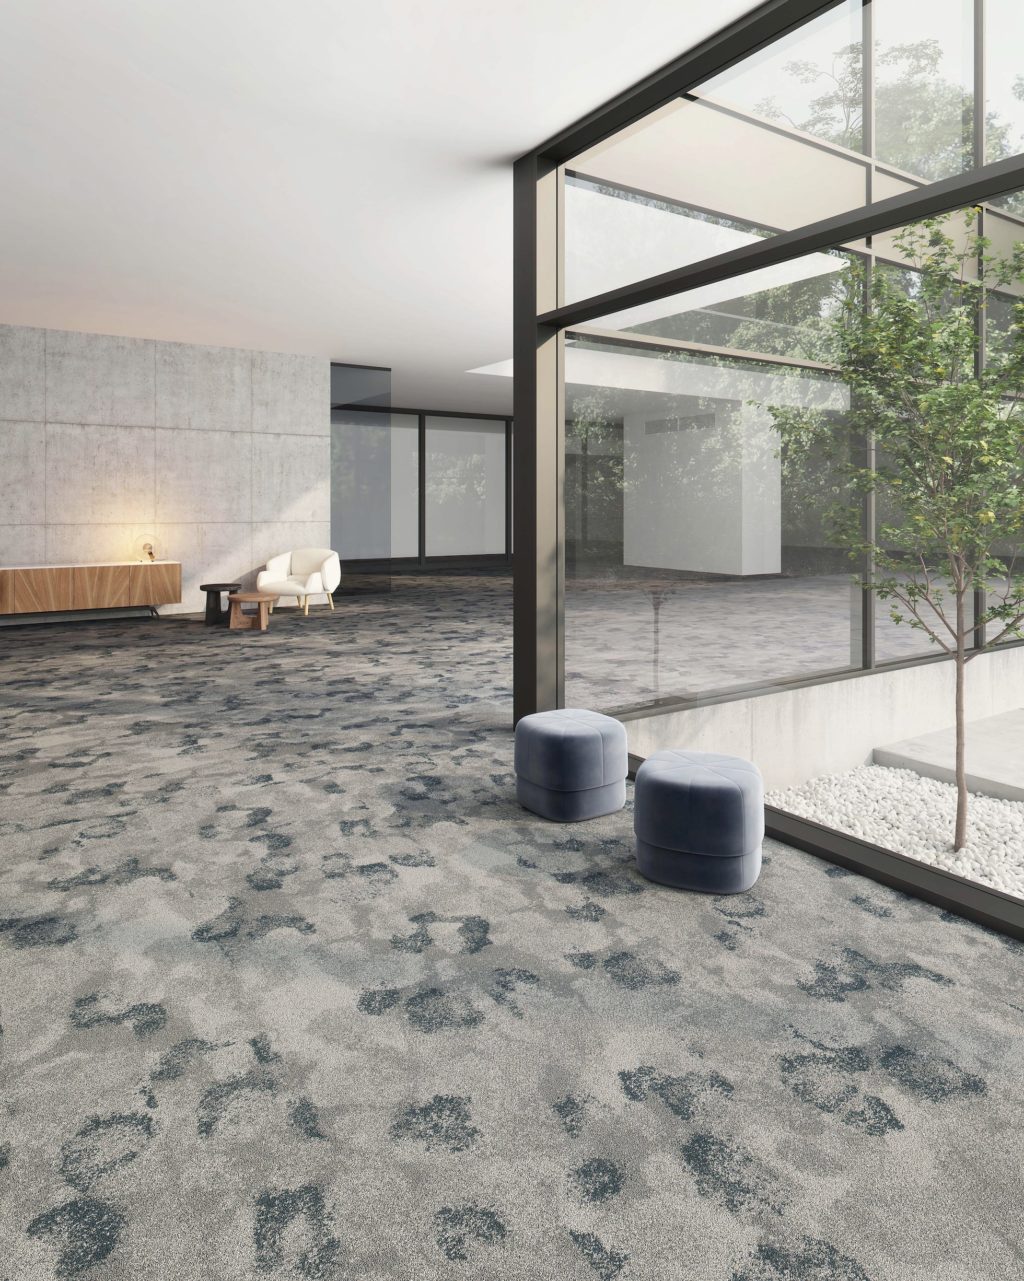 Patcraft launches Subtle Impressions carpet tile